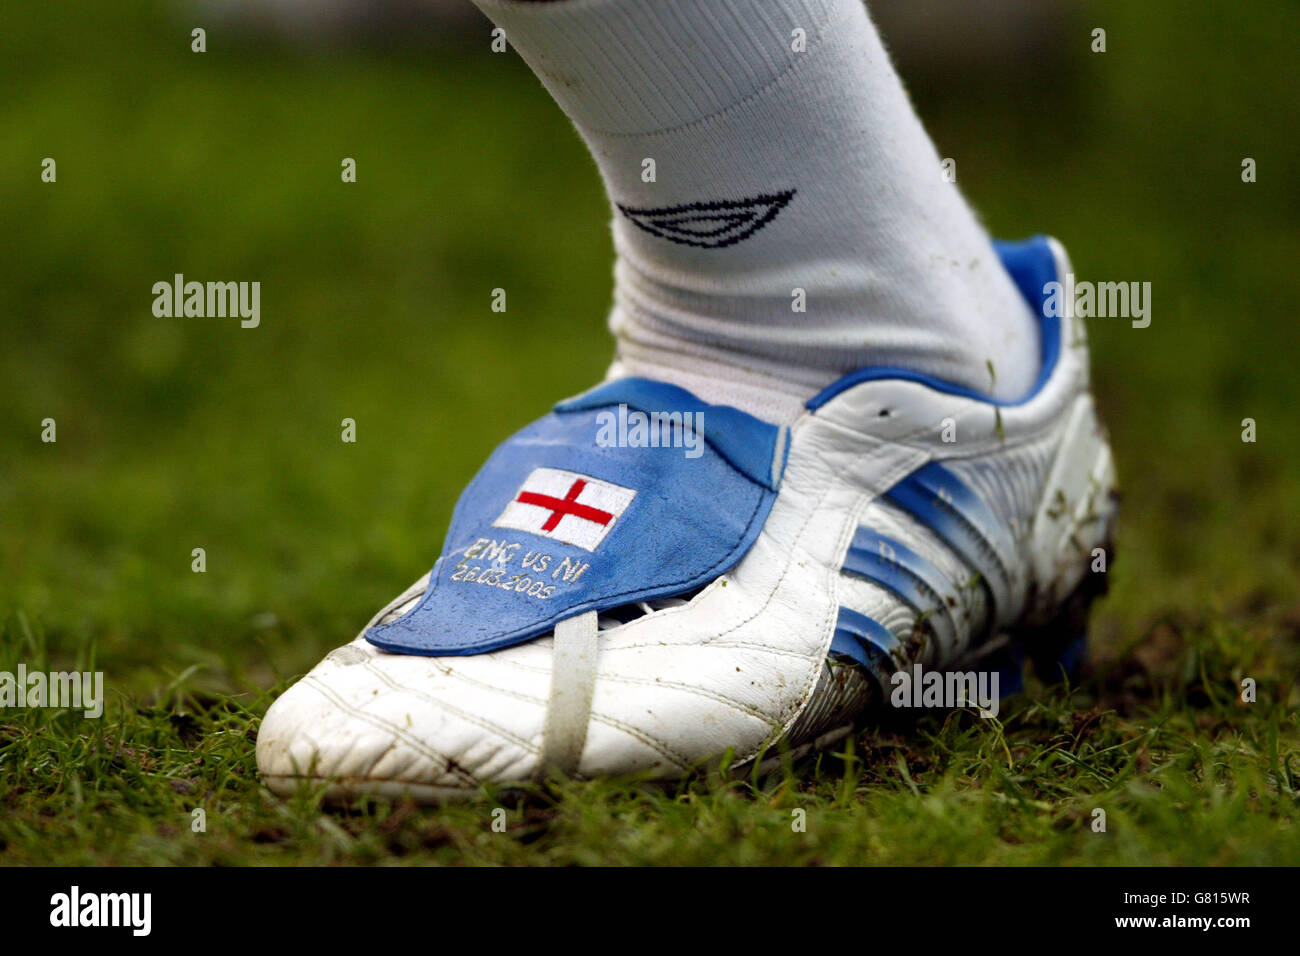 ID David Beckham Boots : r/Boots